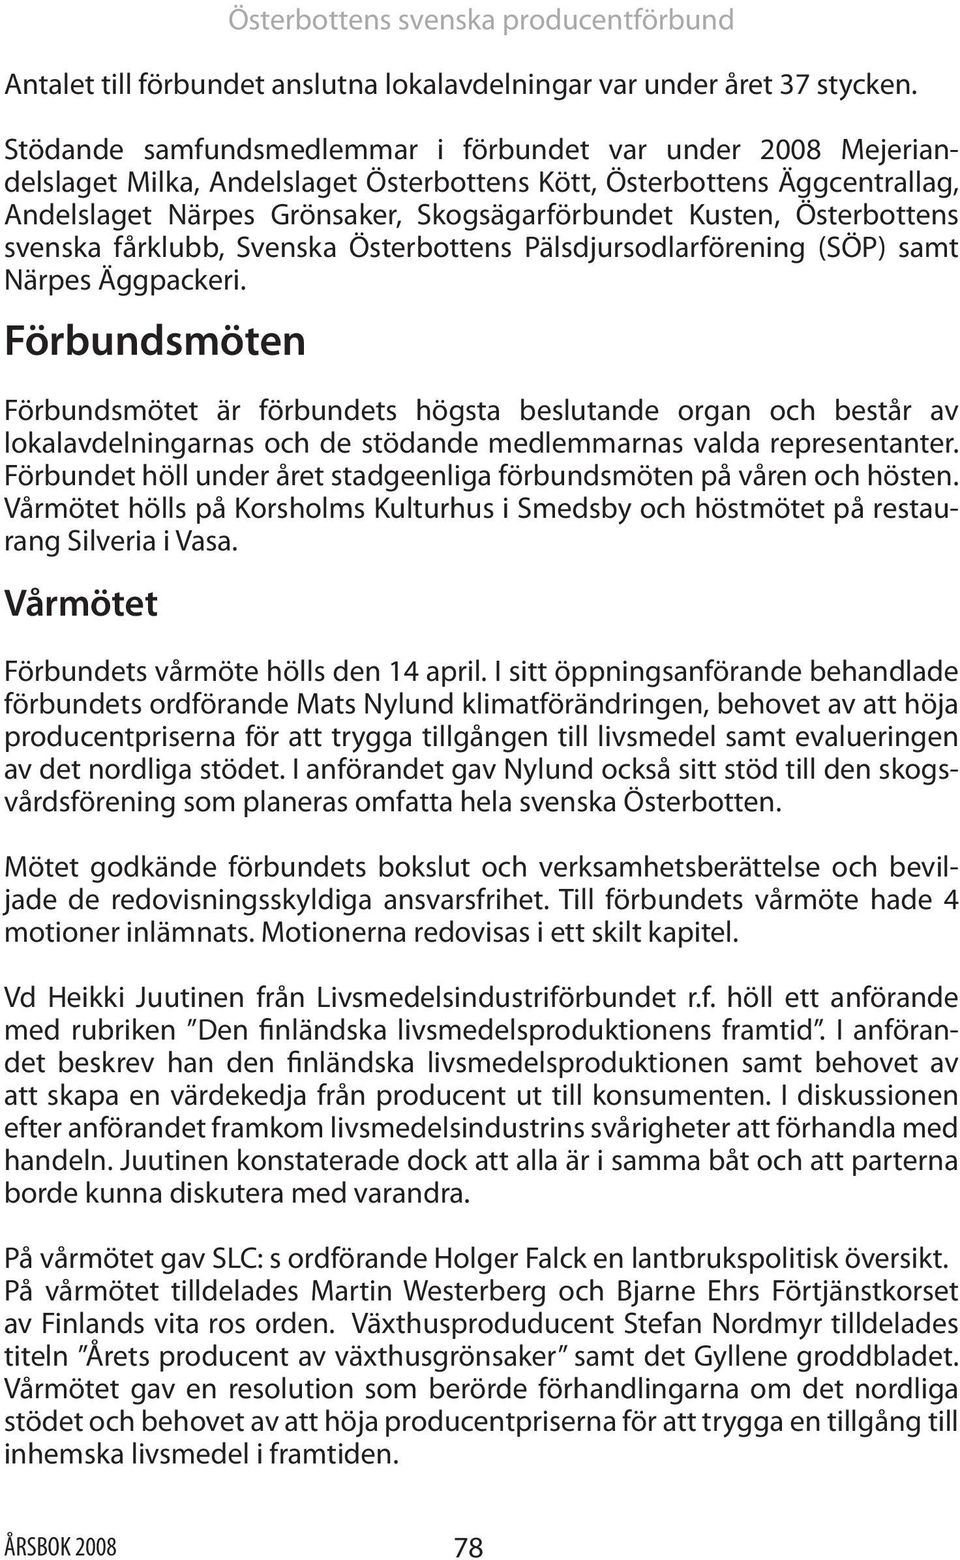 Österbottens svenska fårklubb, Svenska Österbottens Pälsdjursodlarförening (SÖP) samt Närpes Äggpackeri.